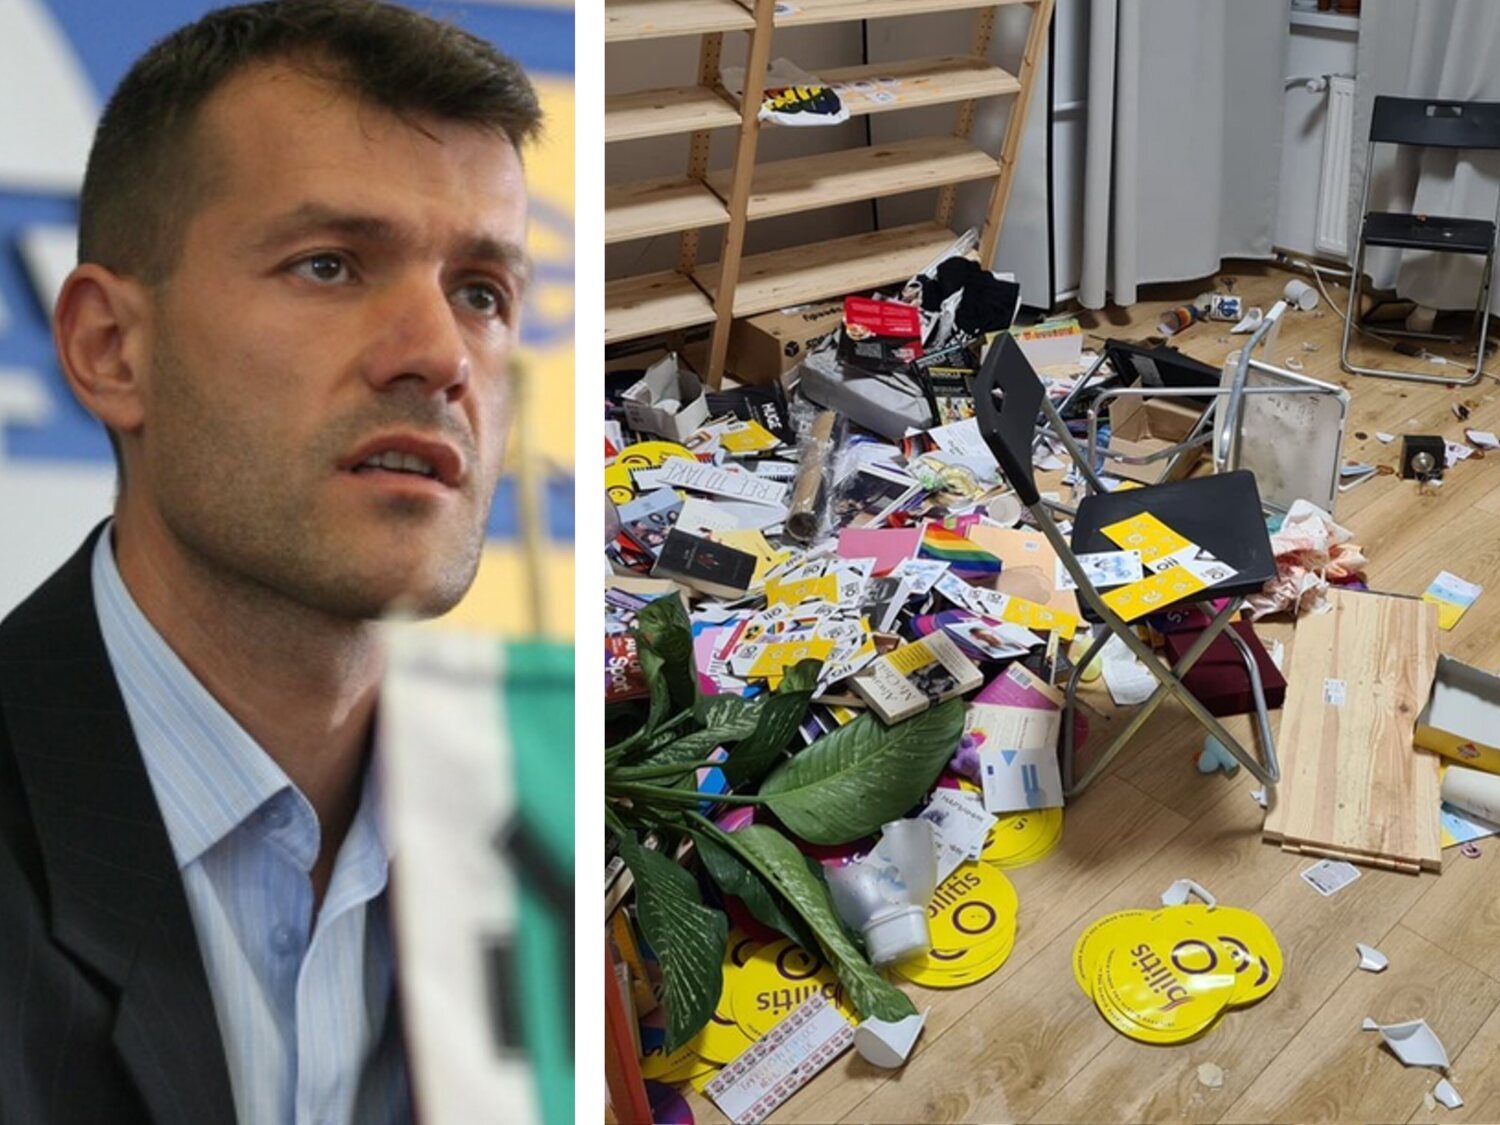 Detenido un candidato presidencial de ultraderecha tras la violenta destrucción del centro LGTBI de Bulgaria